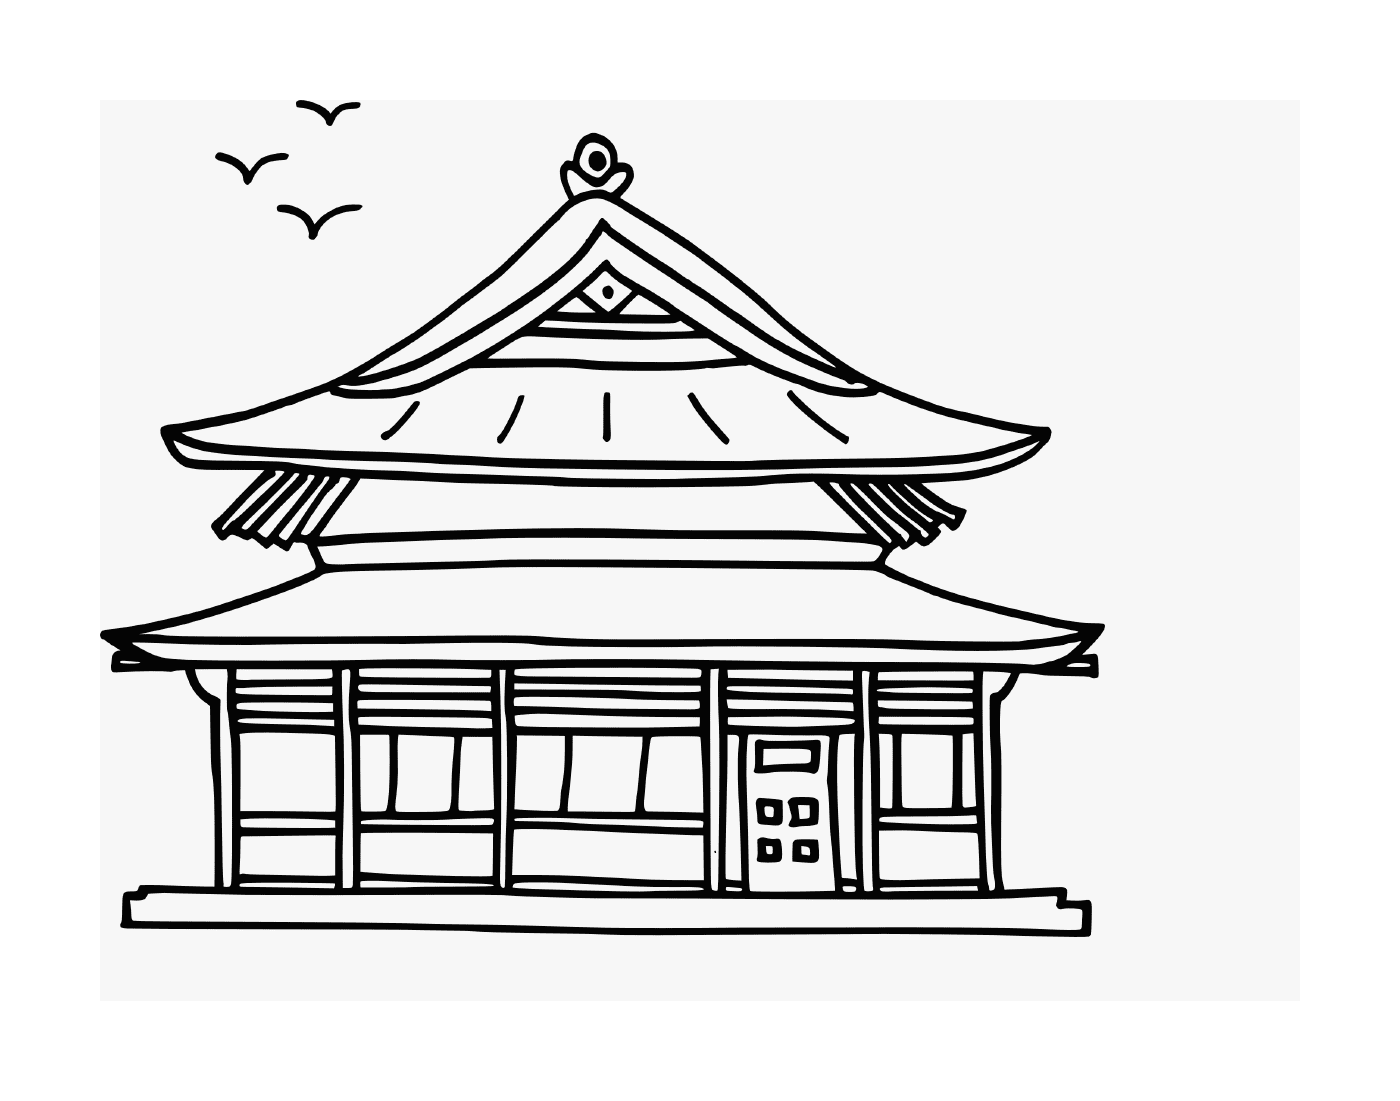  экзотический традиционный азиатский дом 